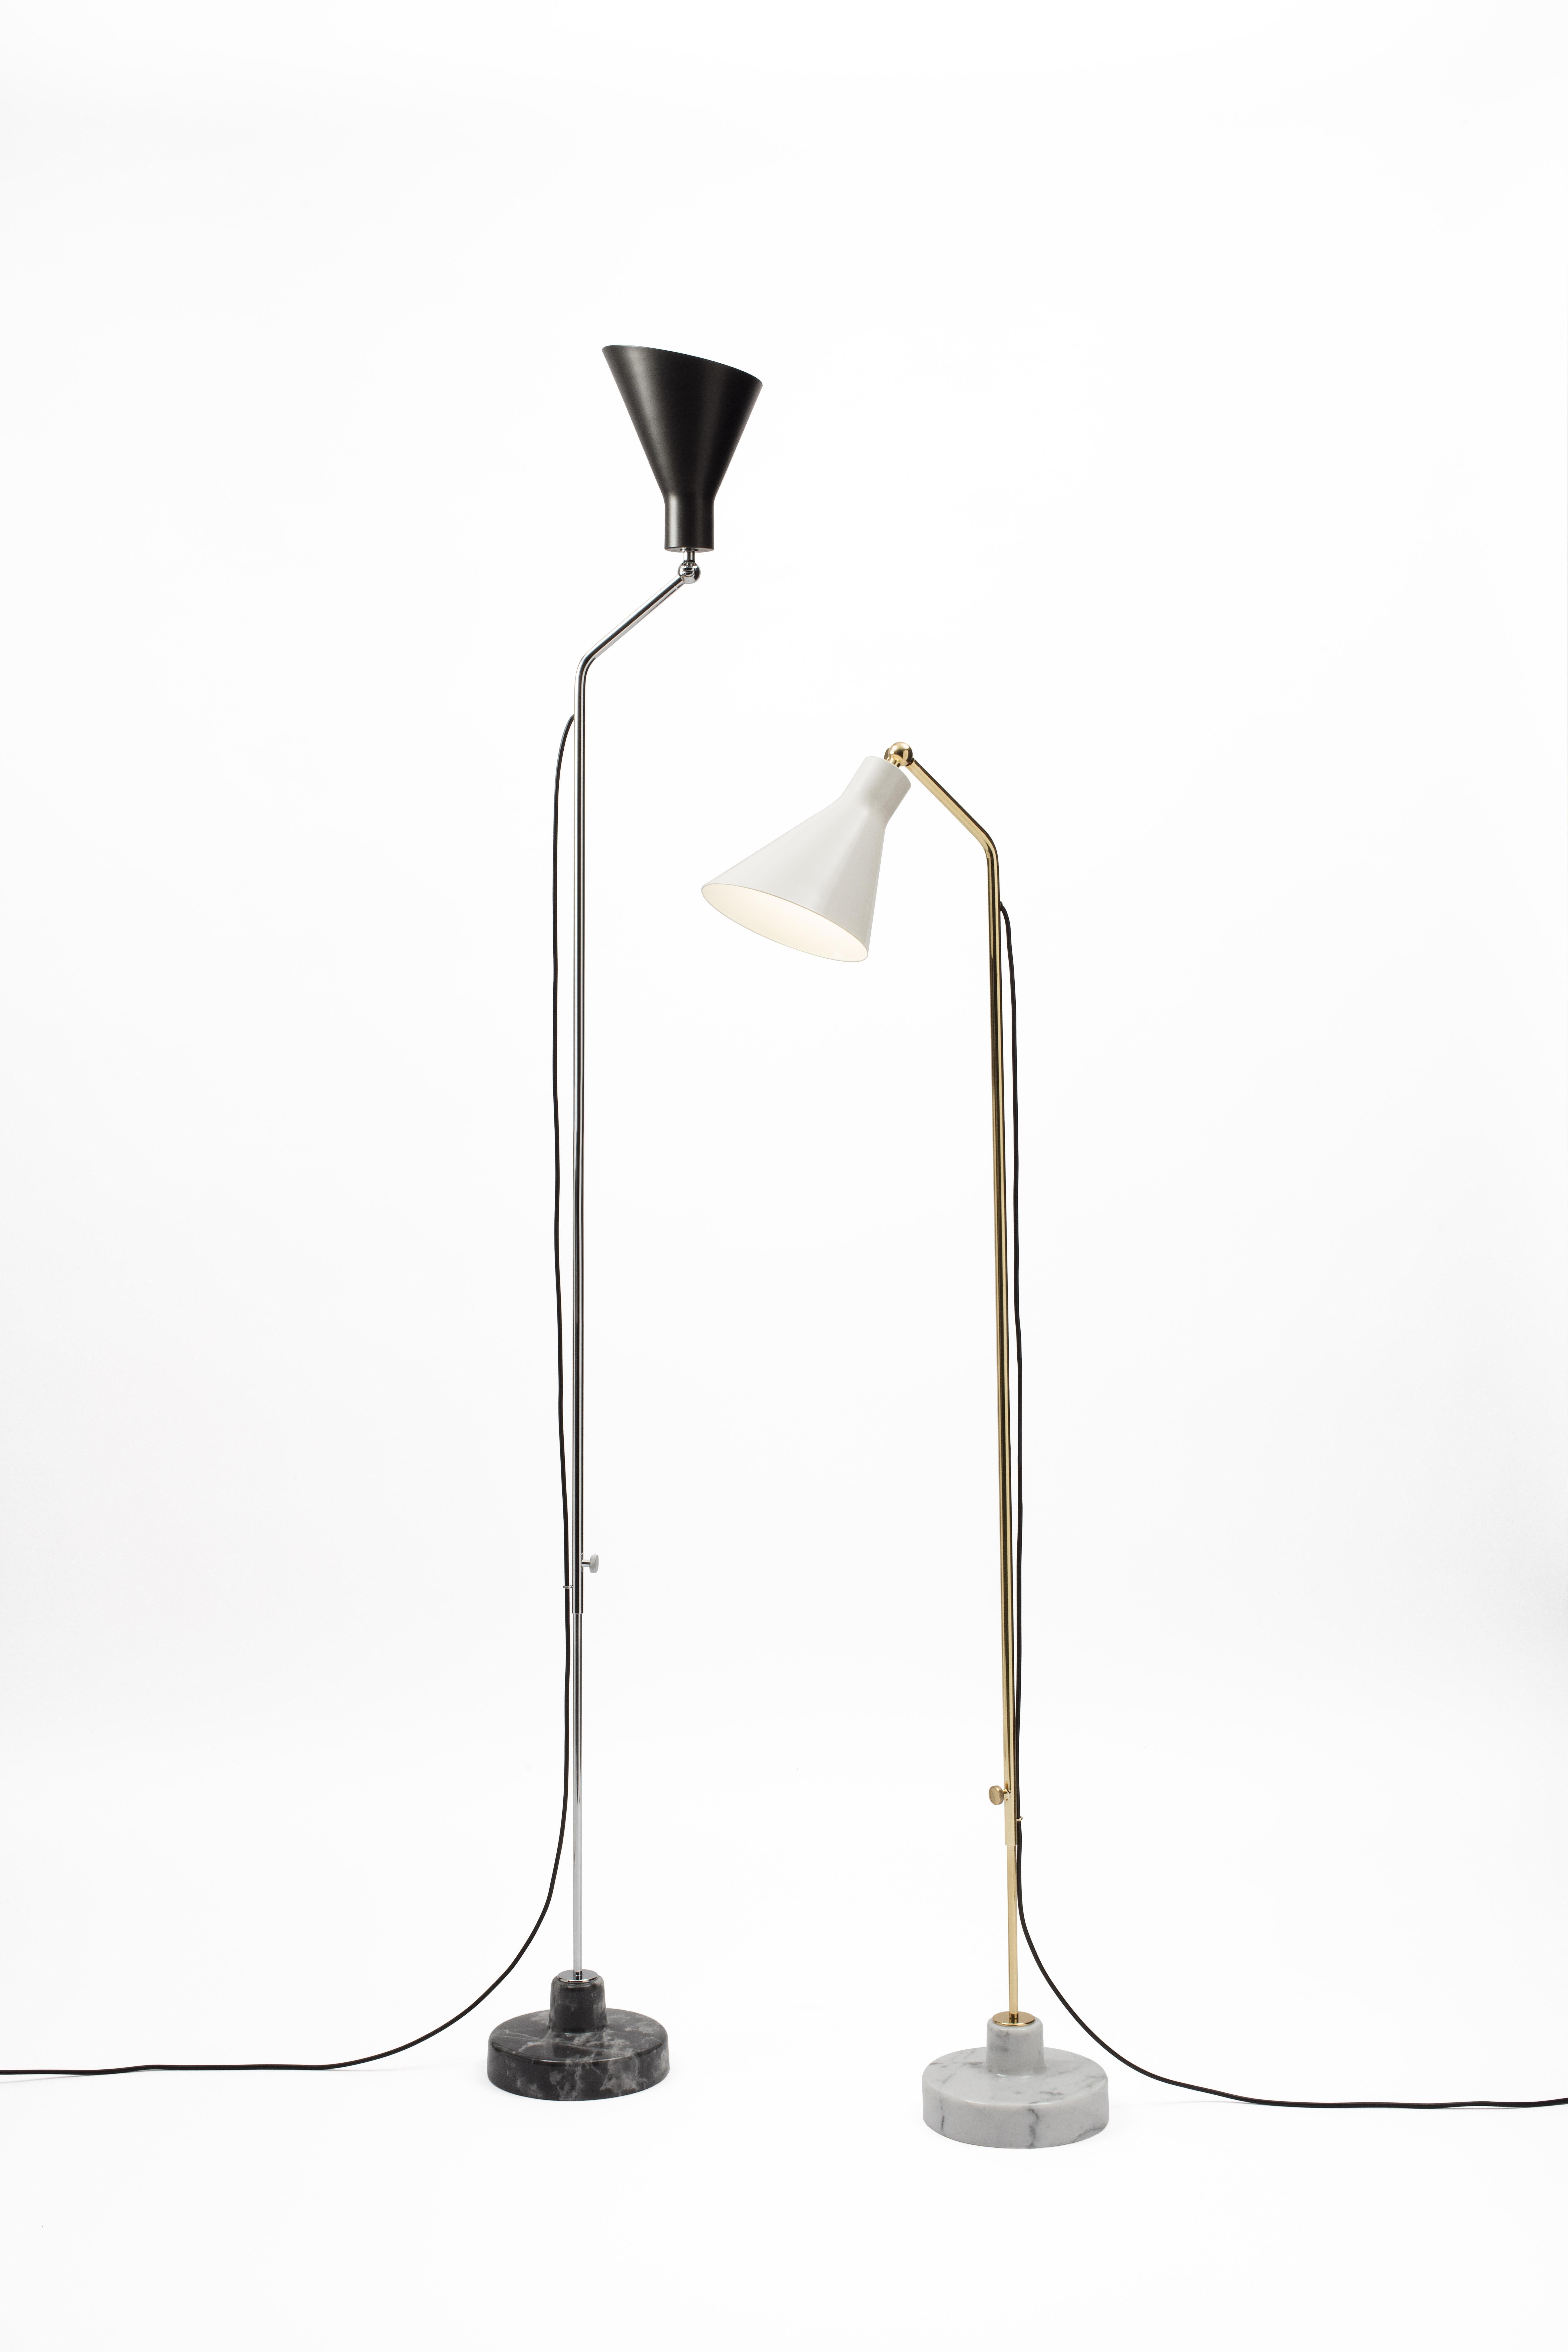 Ignazio Gardella Alzabile Floor Lamp in Brass and Gray Marble for Tato Italia For Sale 5